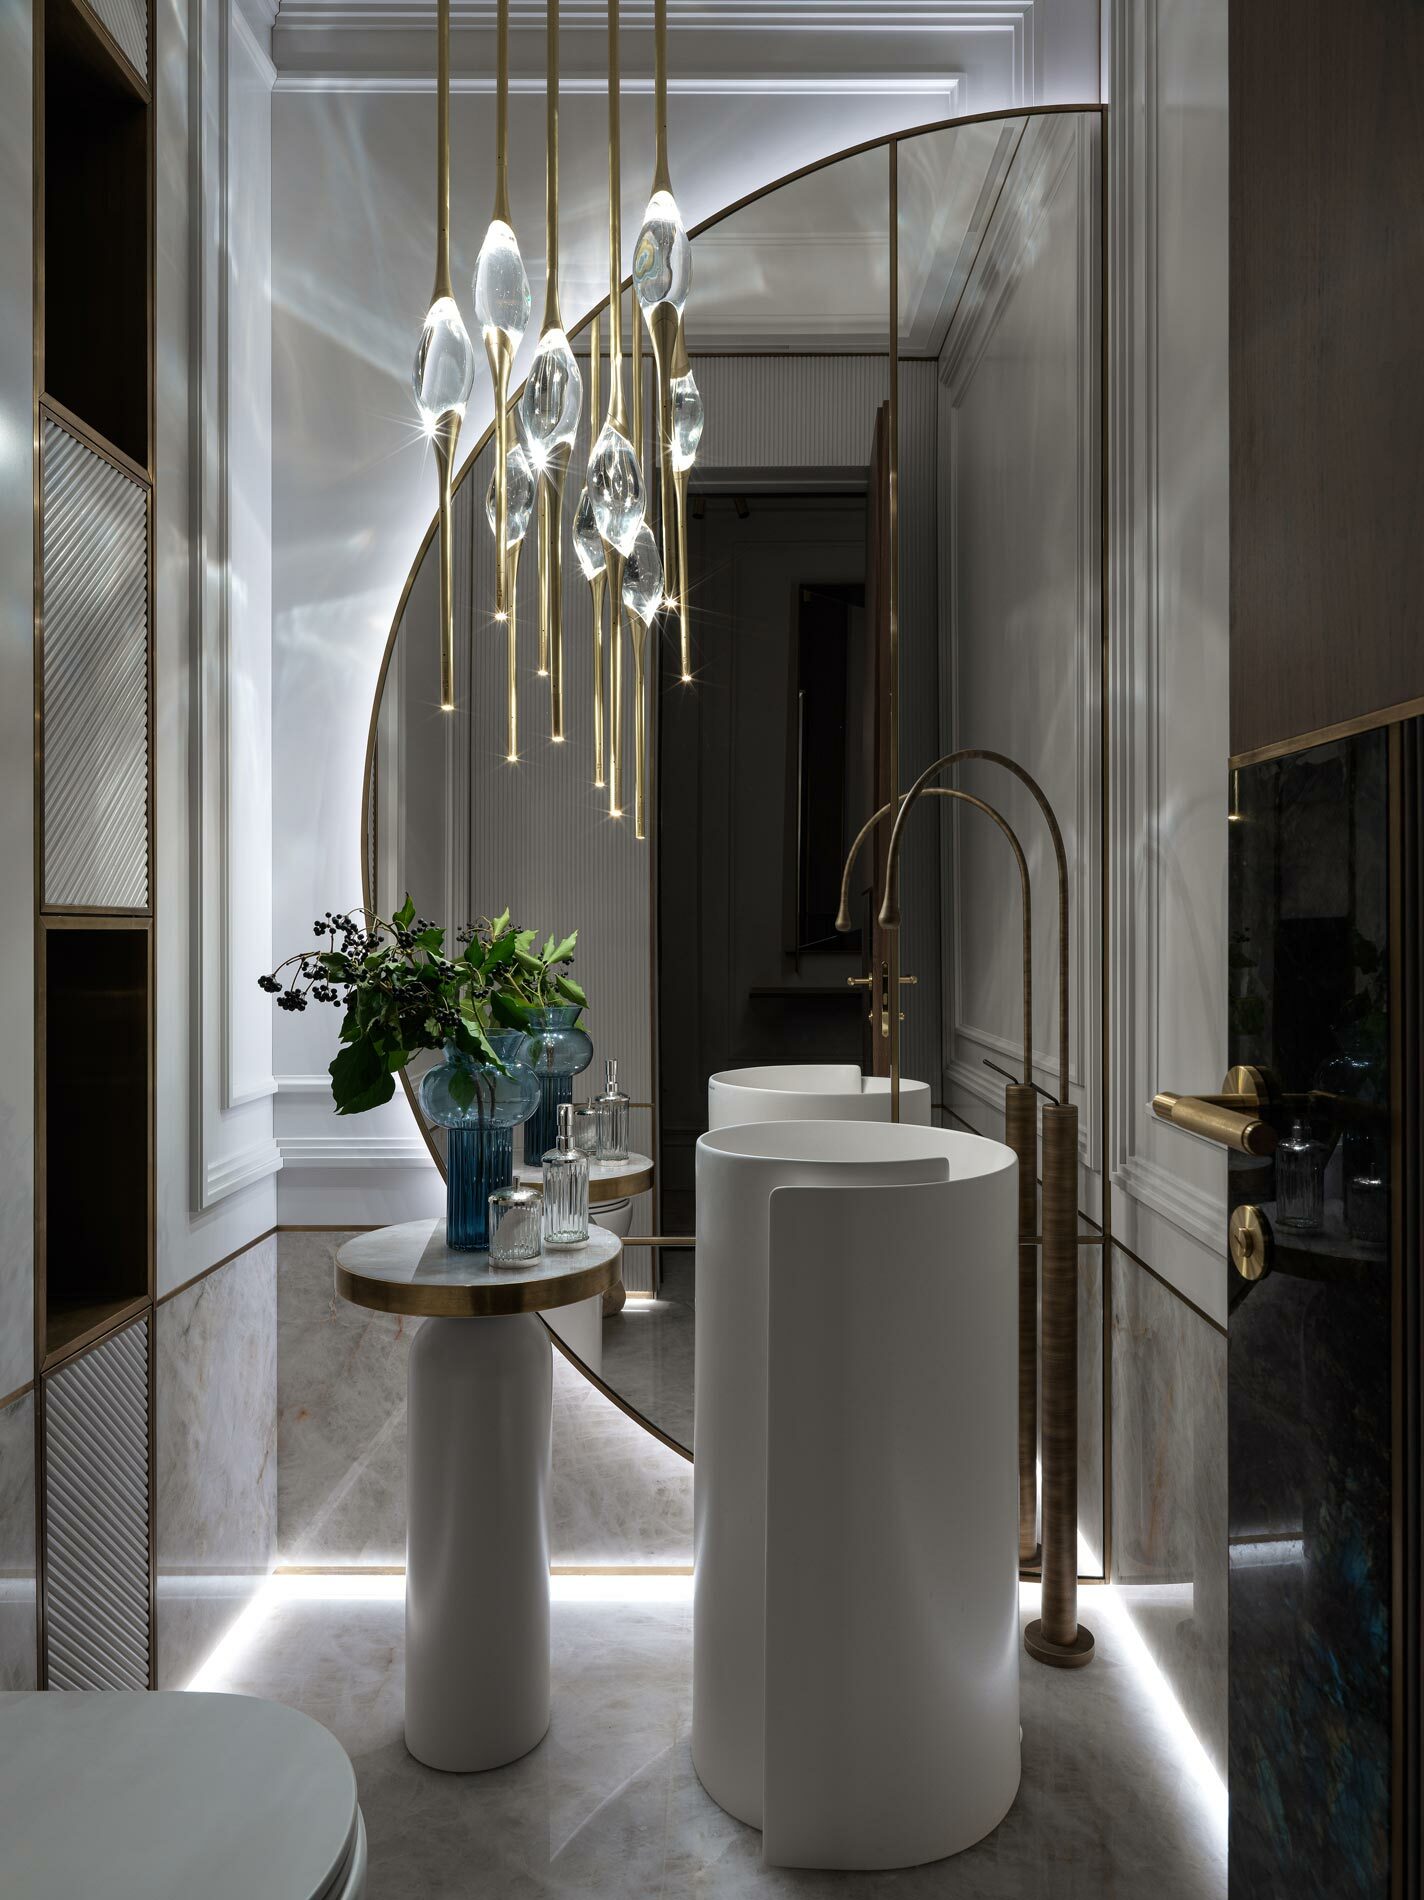 Ordynka 25 bathroom interior design by Nino Zvarkovskaya